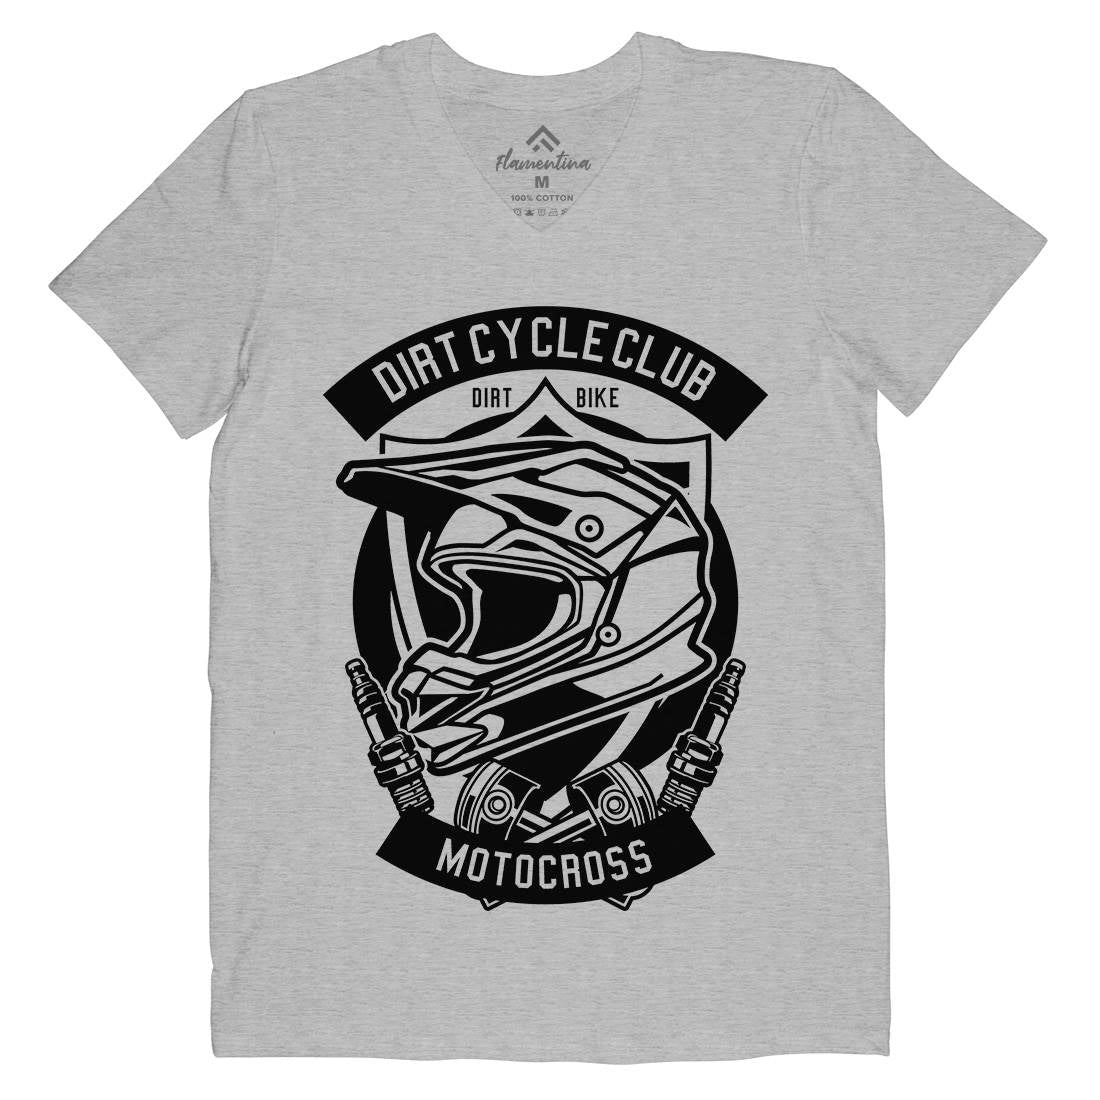 Dirty Cycle Club Mens Organic V-Neck T-Shirt Motorcycles B532